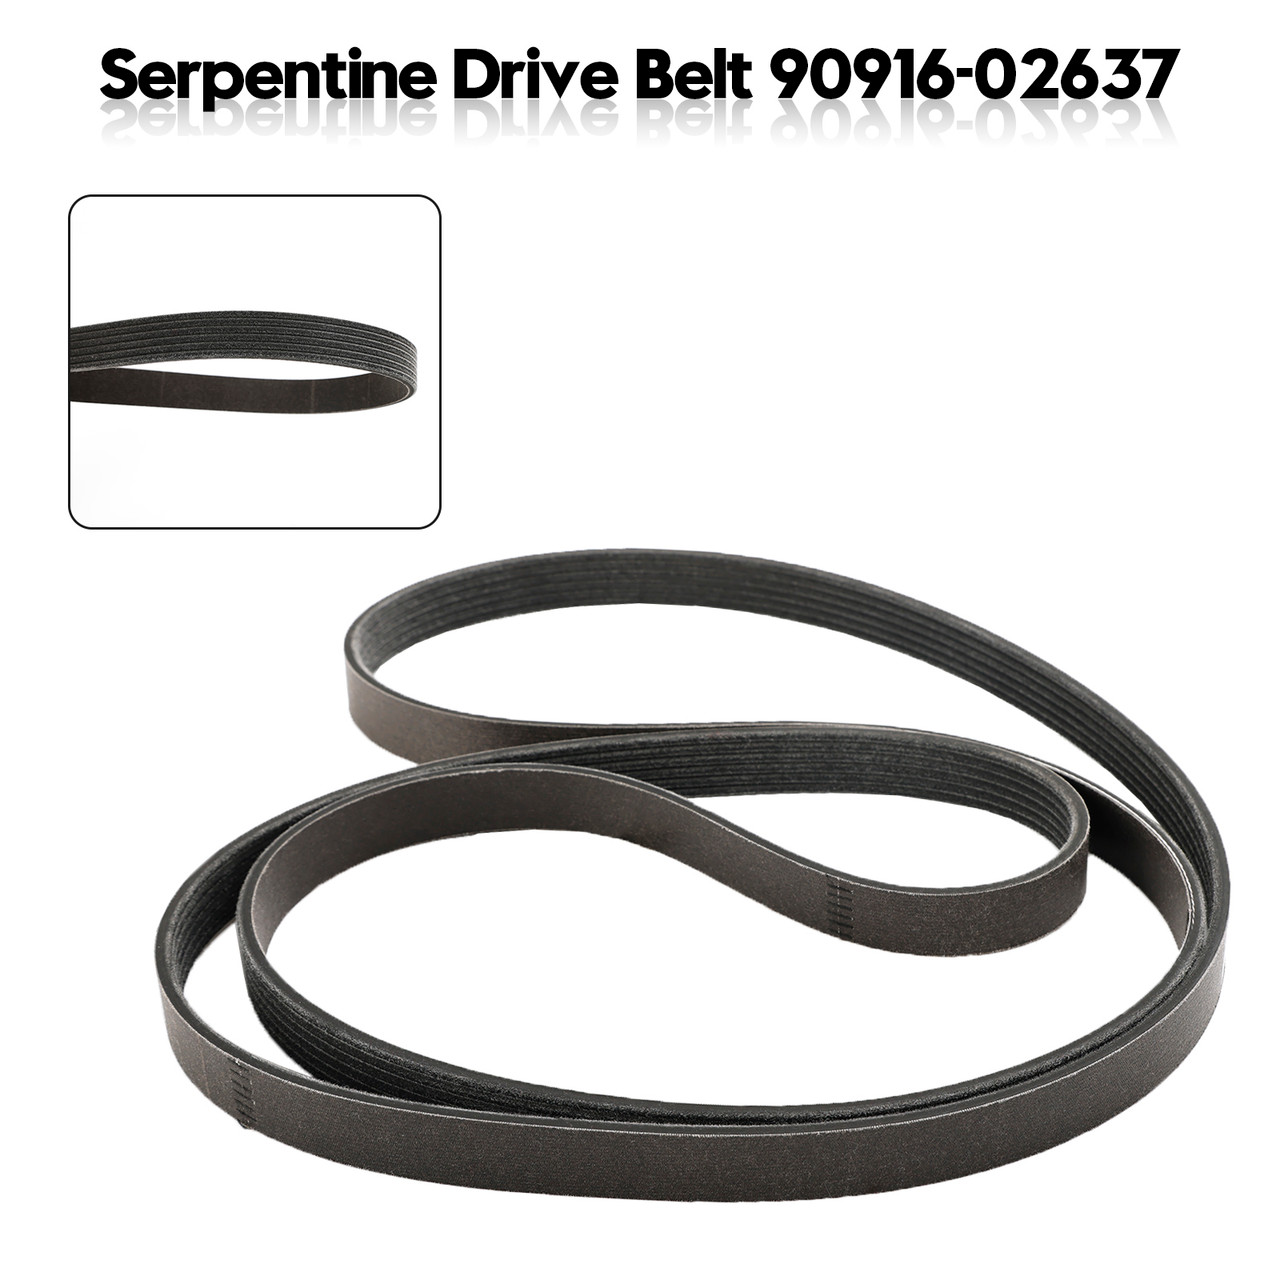 Engine Serpentine V-Belt 90916-02637 For Lexus LS460 4.6L V8 2007-2015